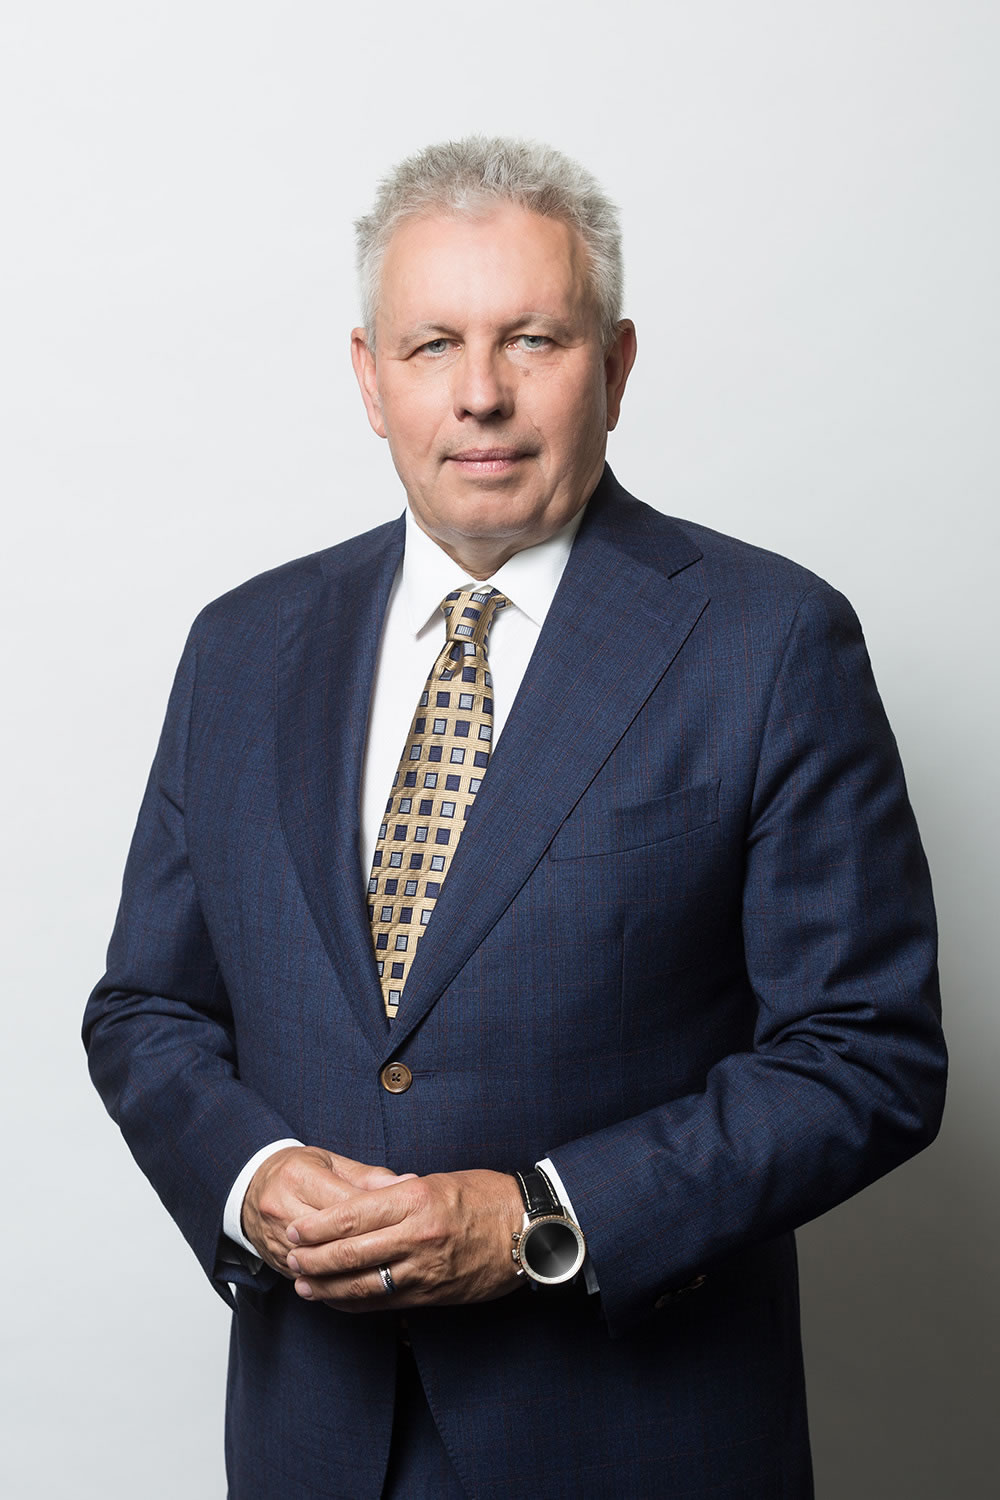 Andrzej Kaczmarek - President of the Management Board